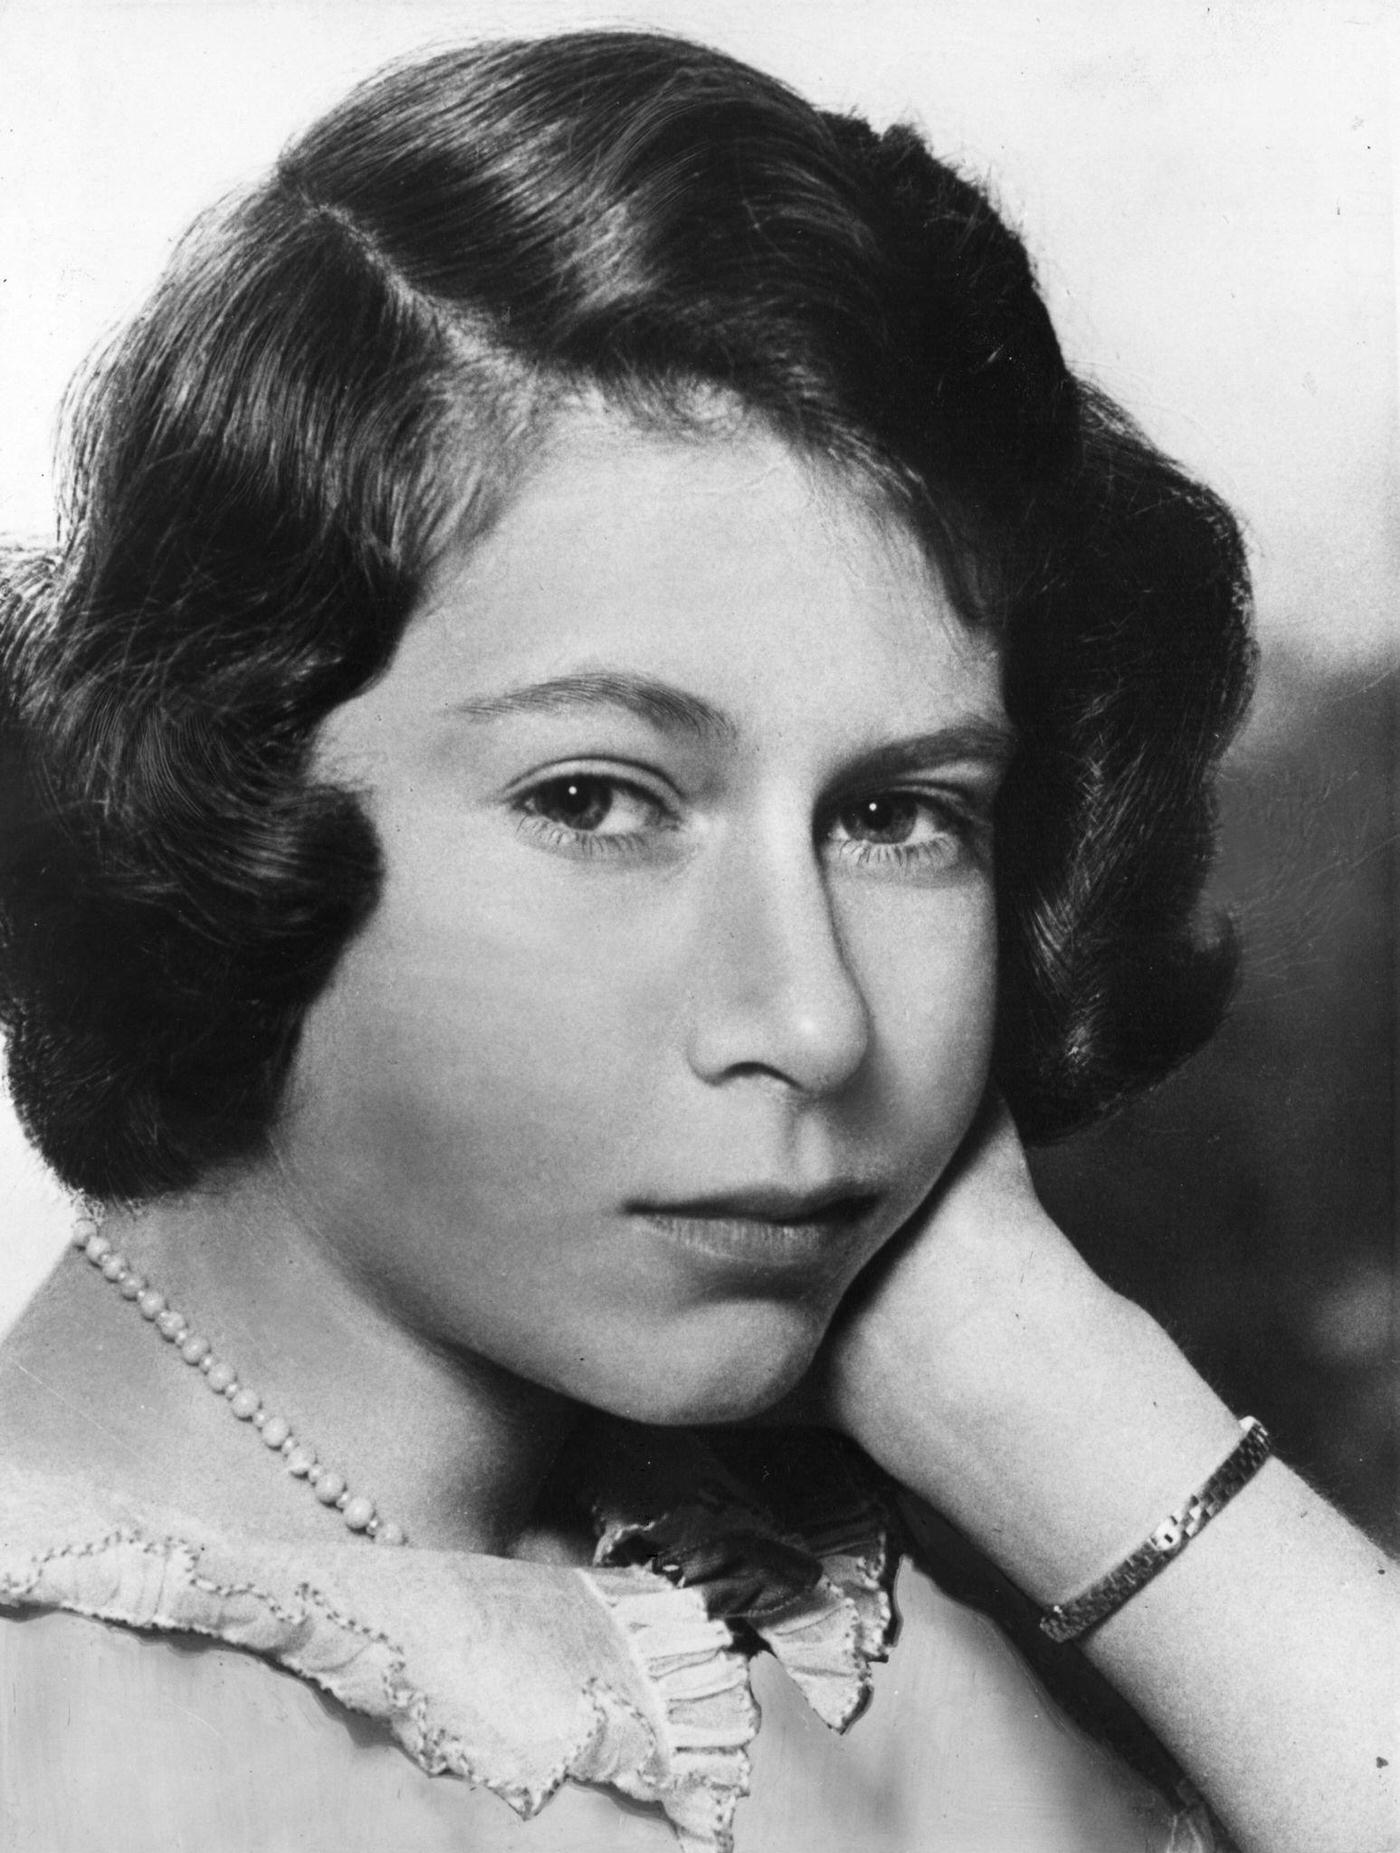 Portrait of Princess Elizabeth taken at Windsor Castle, 22nd June 1940.